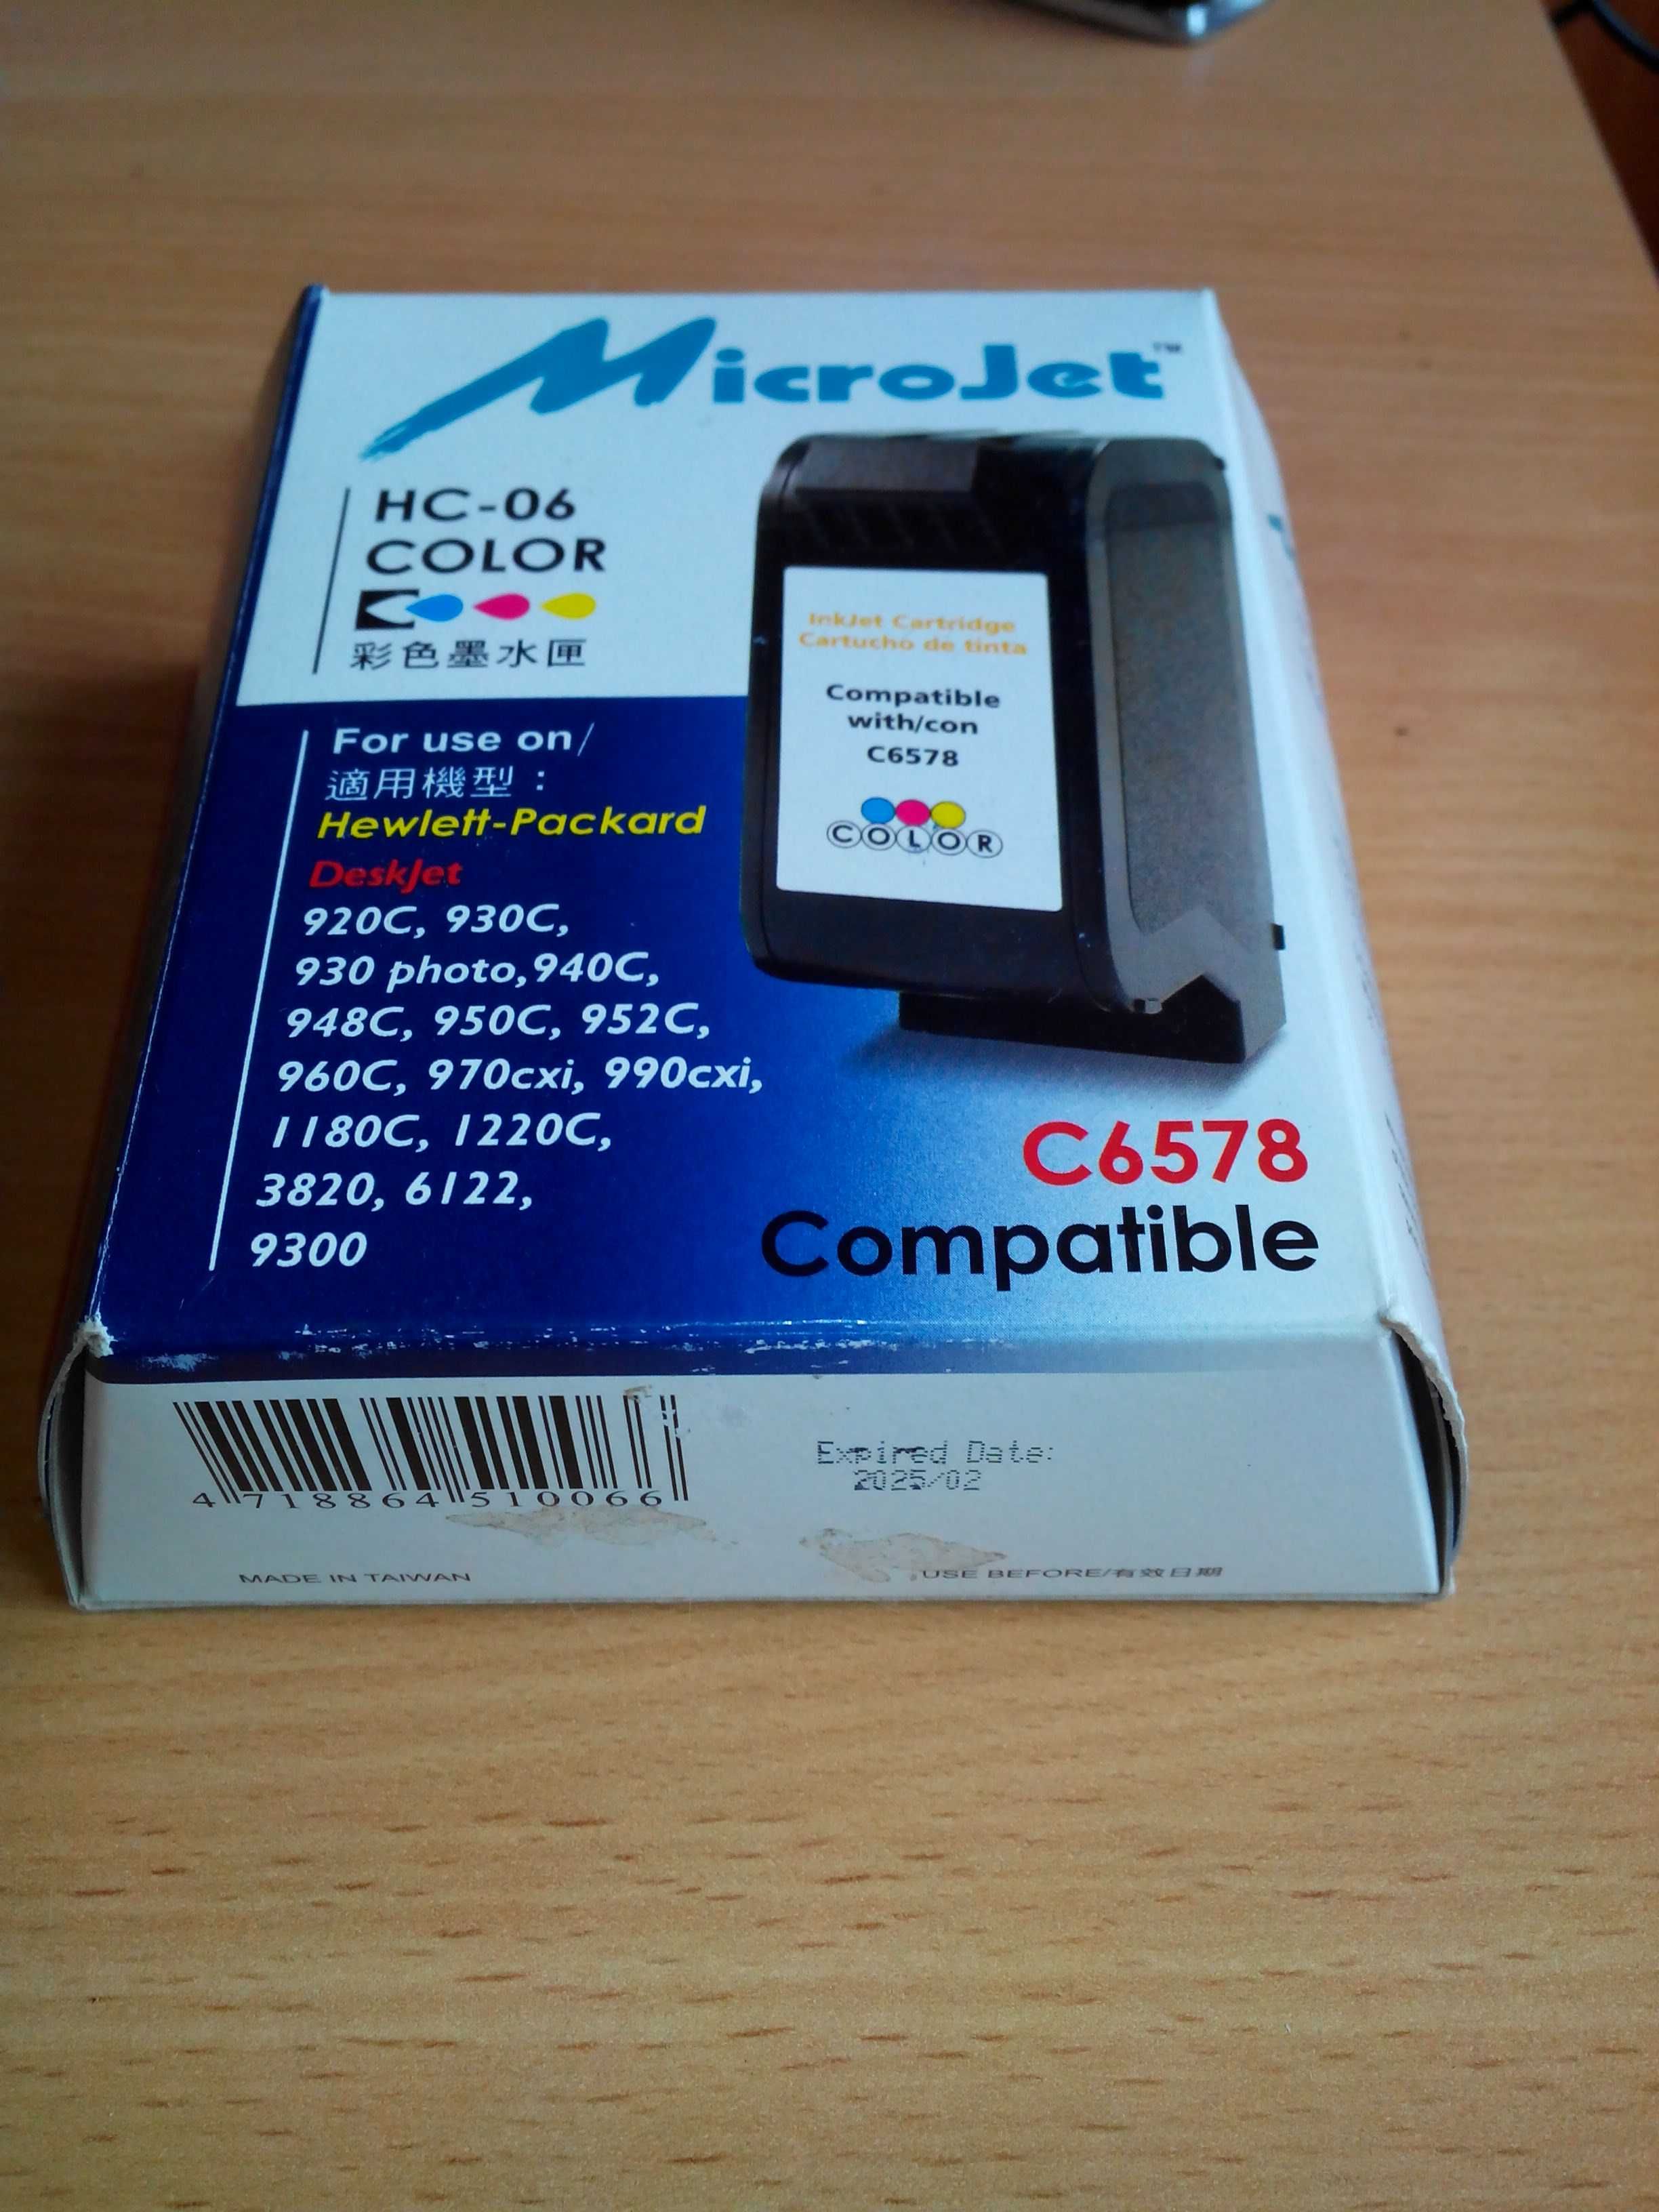 Картридж MicroJet для HP 78 Color (HC-06)